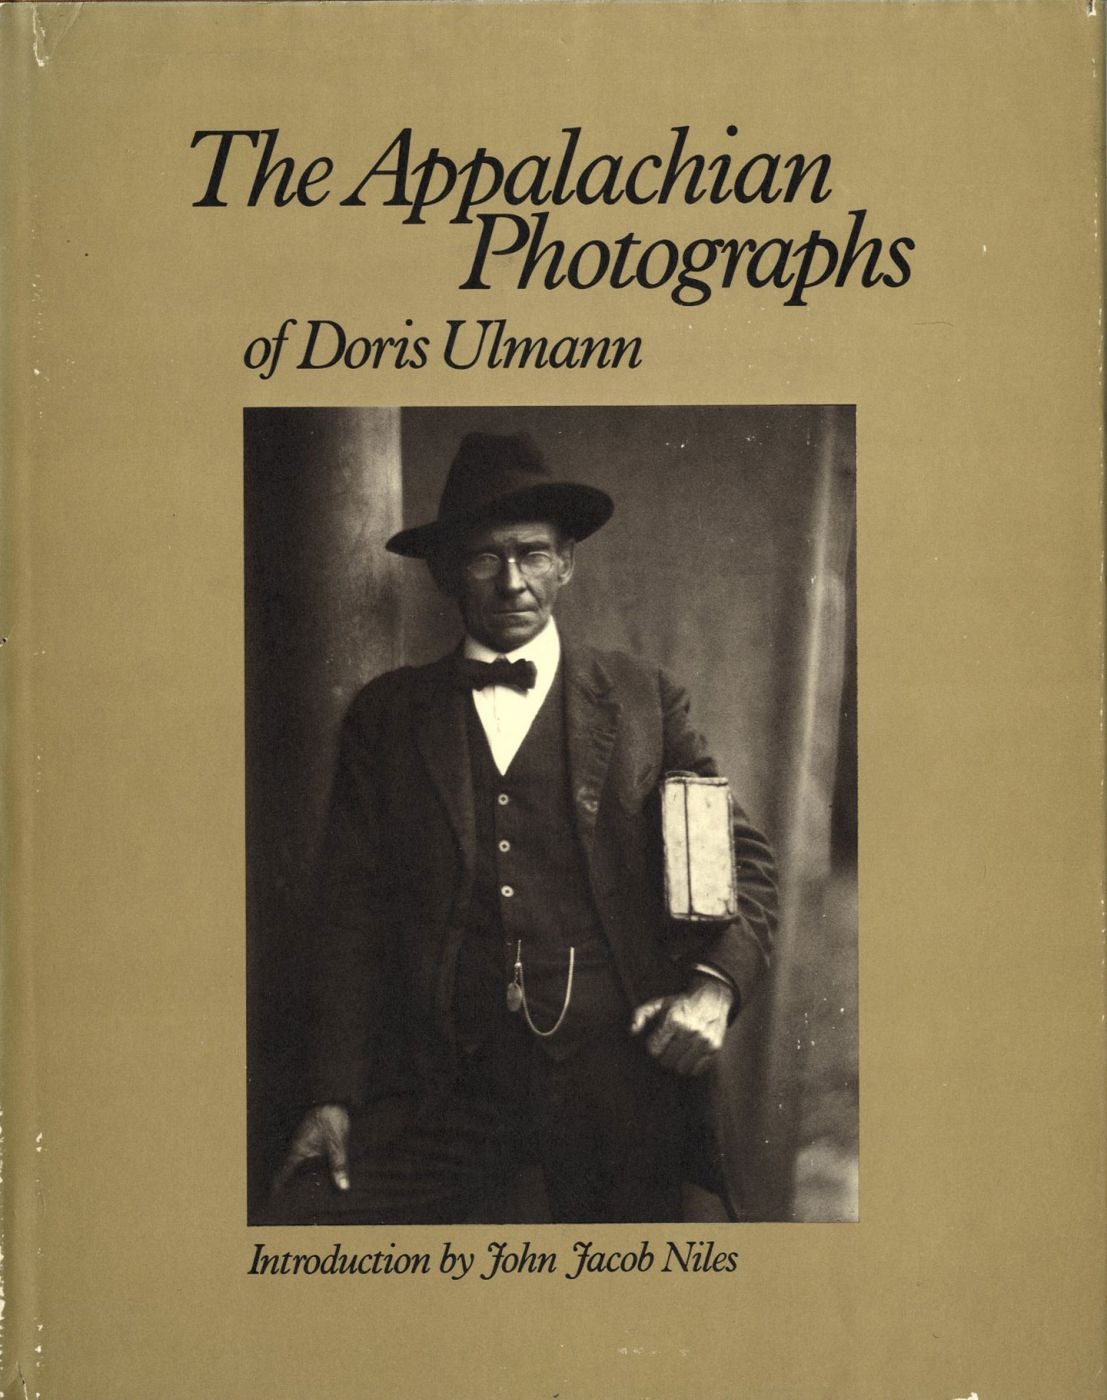 The Appalachian Photographs of Doris Ulmann